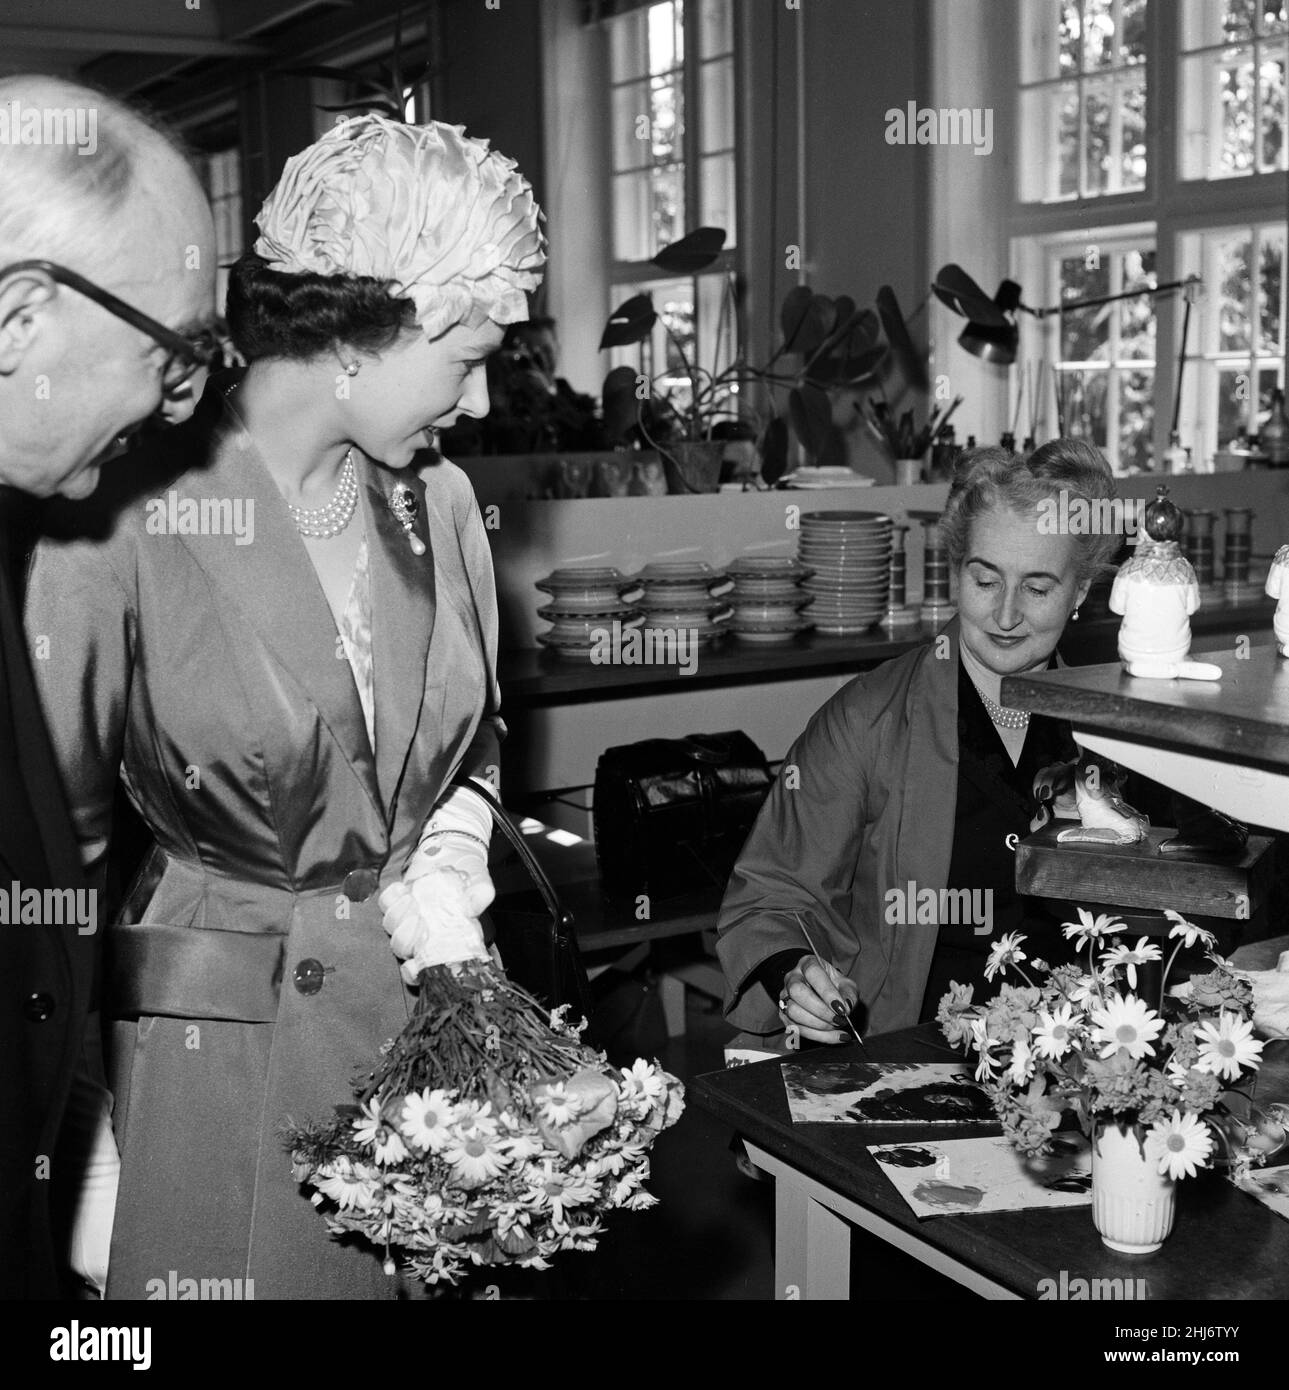 Königin Elizabeth II. Und Prinz Philip, Herzog von Edinburgh, besuchen Dänemark. Königin Elizabeth abgebildet Besuch einer Porzellanfabrik. 23rd Mai 1957. Stockfoto